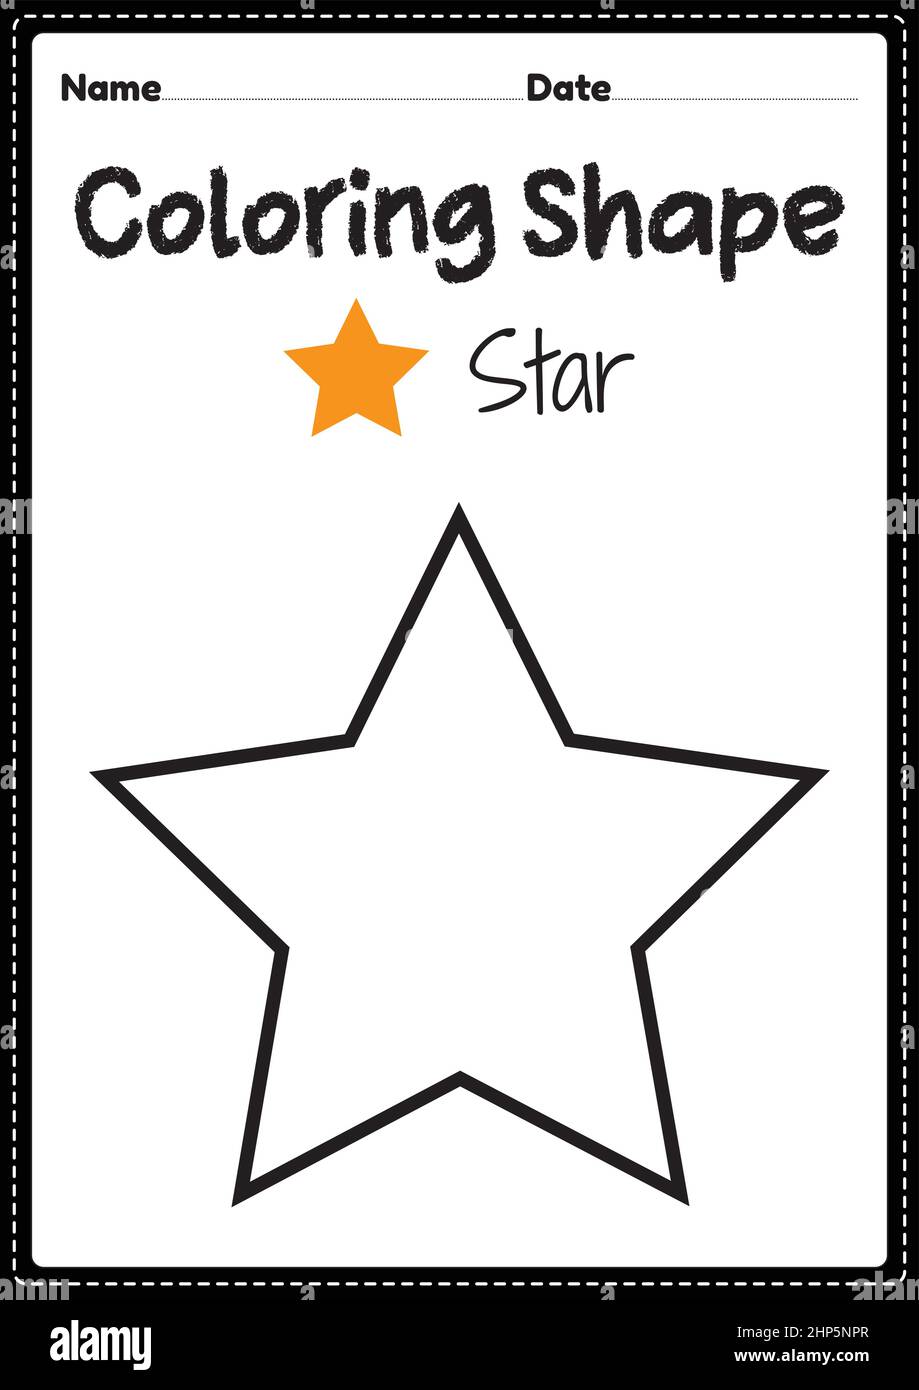 Star Coloring Seite für Vorschule, Kindergarten & Montessori Kinder, um visuelle Kunst Zeichnung und Färbung Aktivitäten zu üben, um Kreativität, Fokus und motorische Fähigkeiten zu entwickeln. Stock Vektor